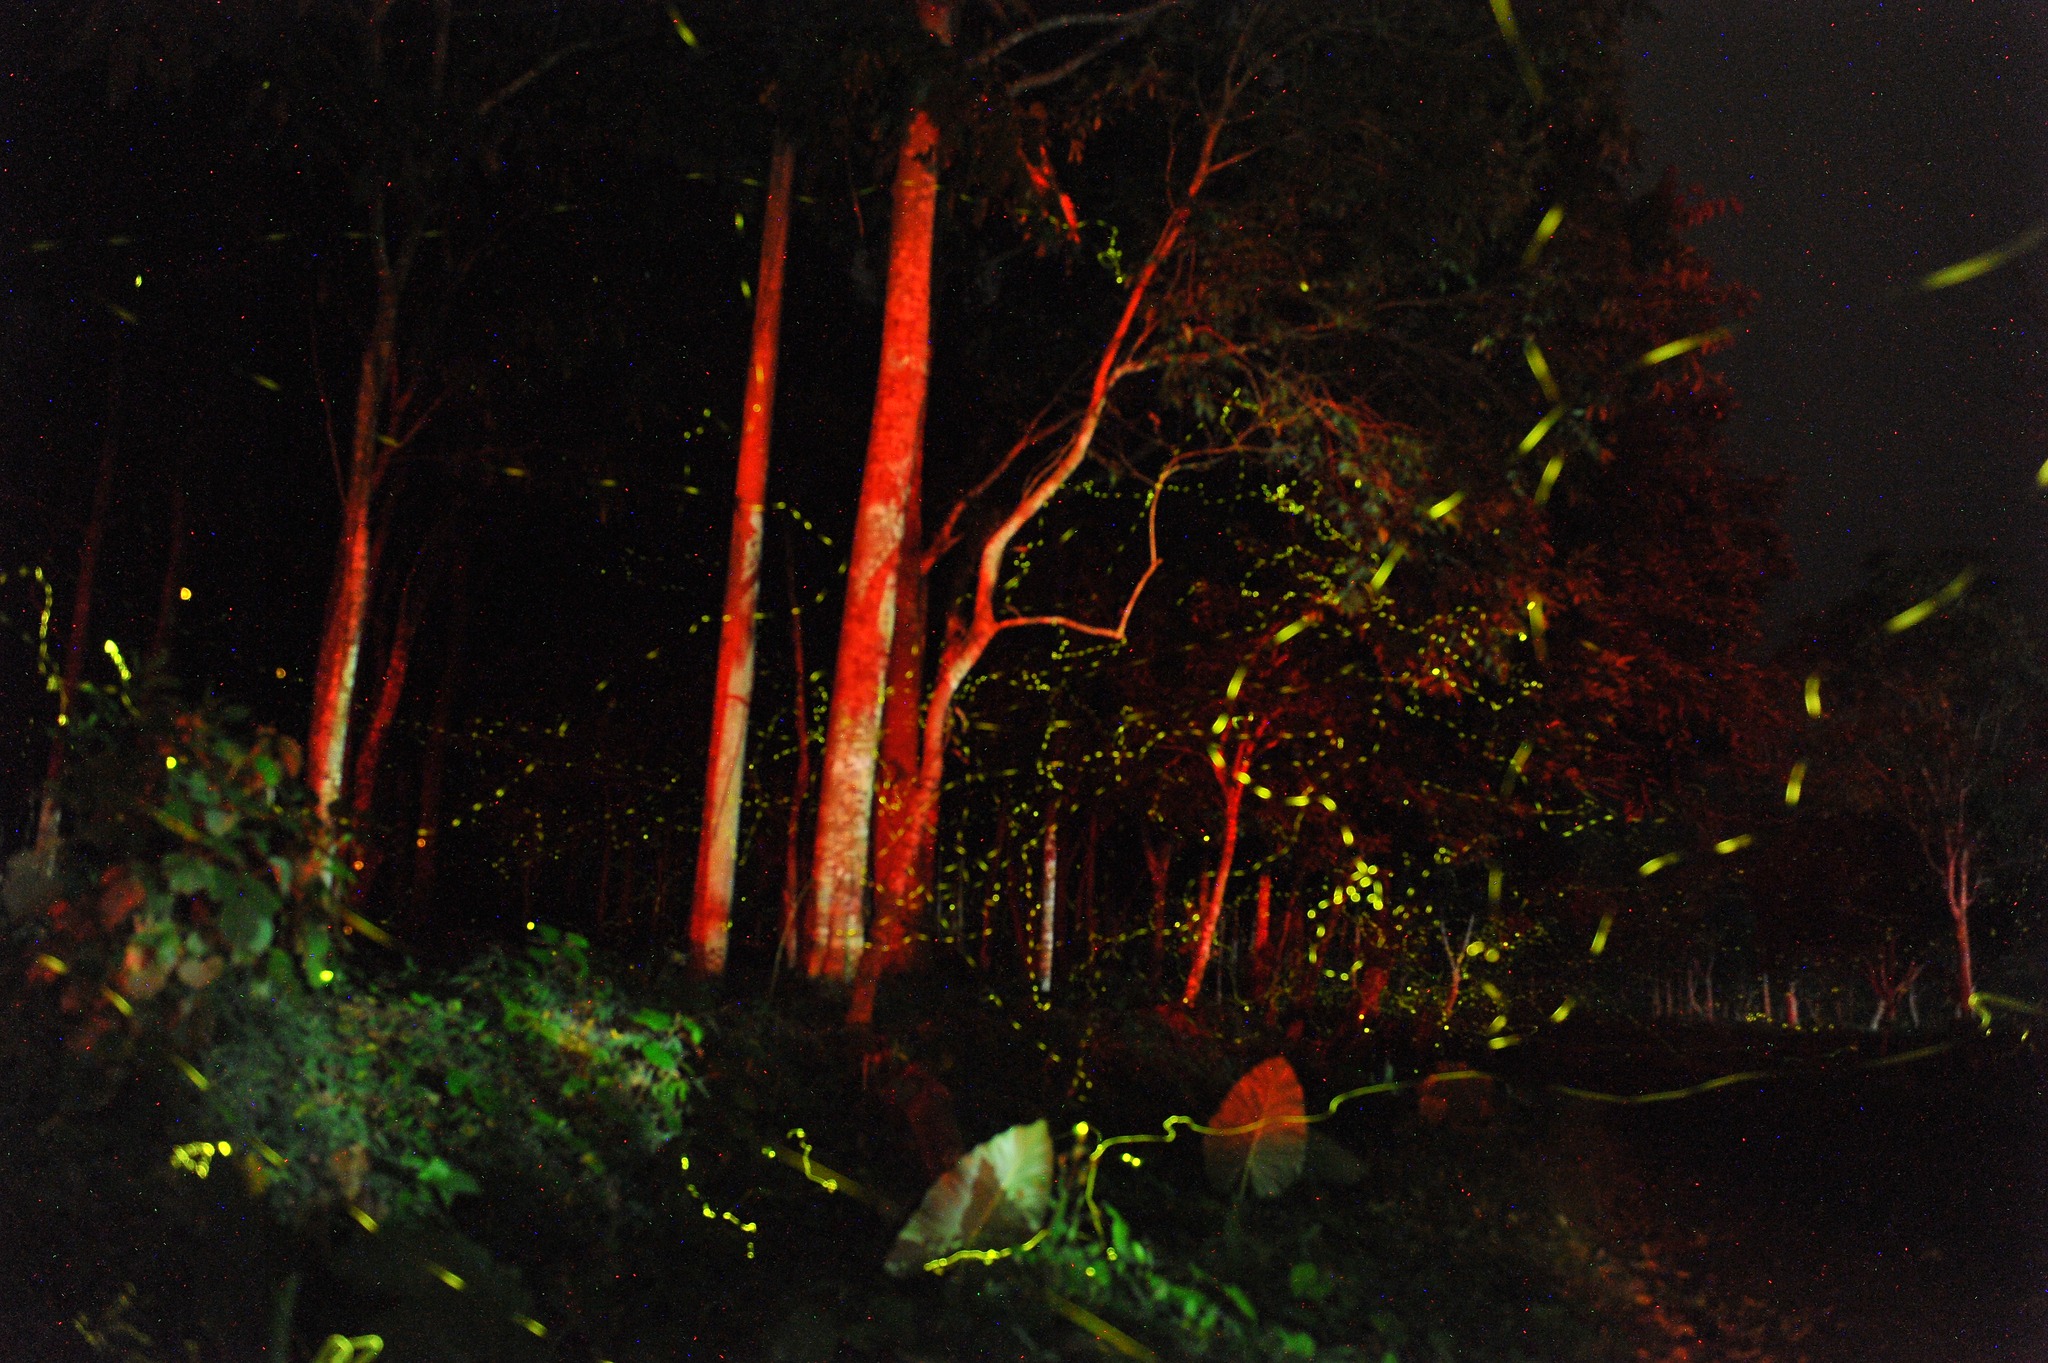 Giữa đêm, 'ngàn sao' sáng rực bỗng hiện ra ở rừng Cúc Phương - 3